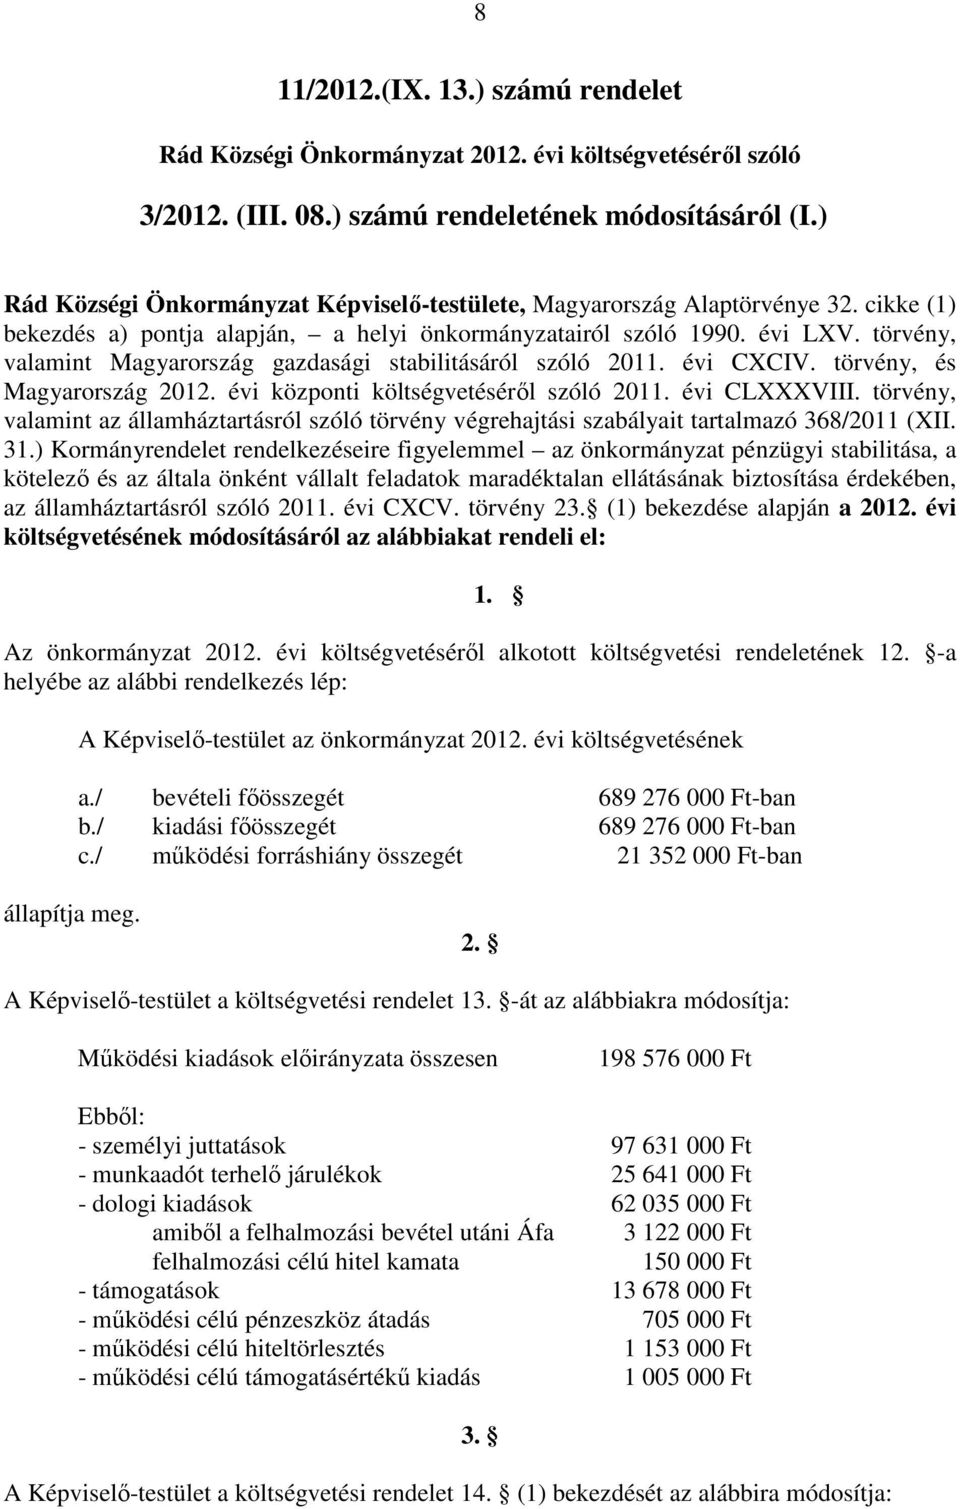 törvény, valamint Magyarország gazdasági stabilitásáról szóló 2011. évi CXCIV. törvény, és Magyarország 2012. évi központi költségvetéséről szóló 2011. évi CLXXXVIII.